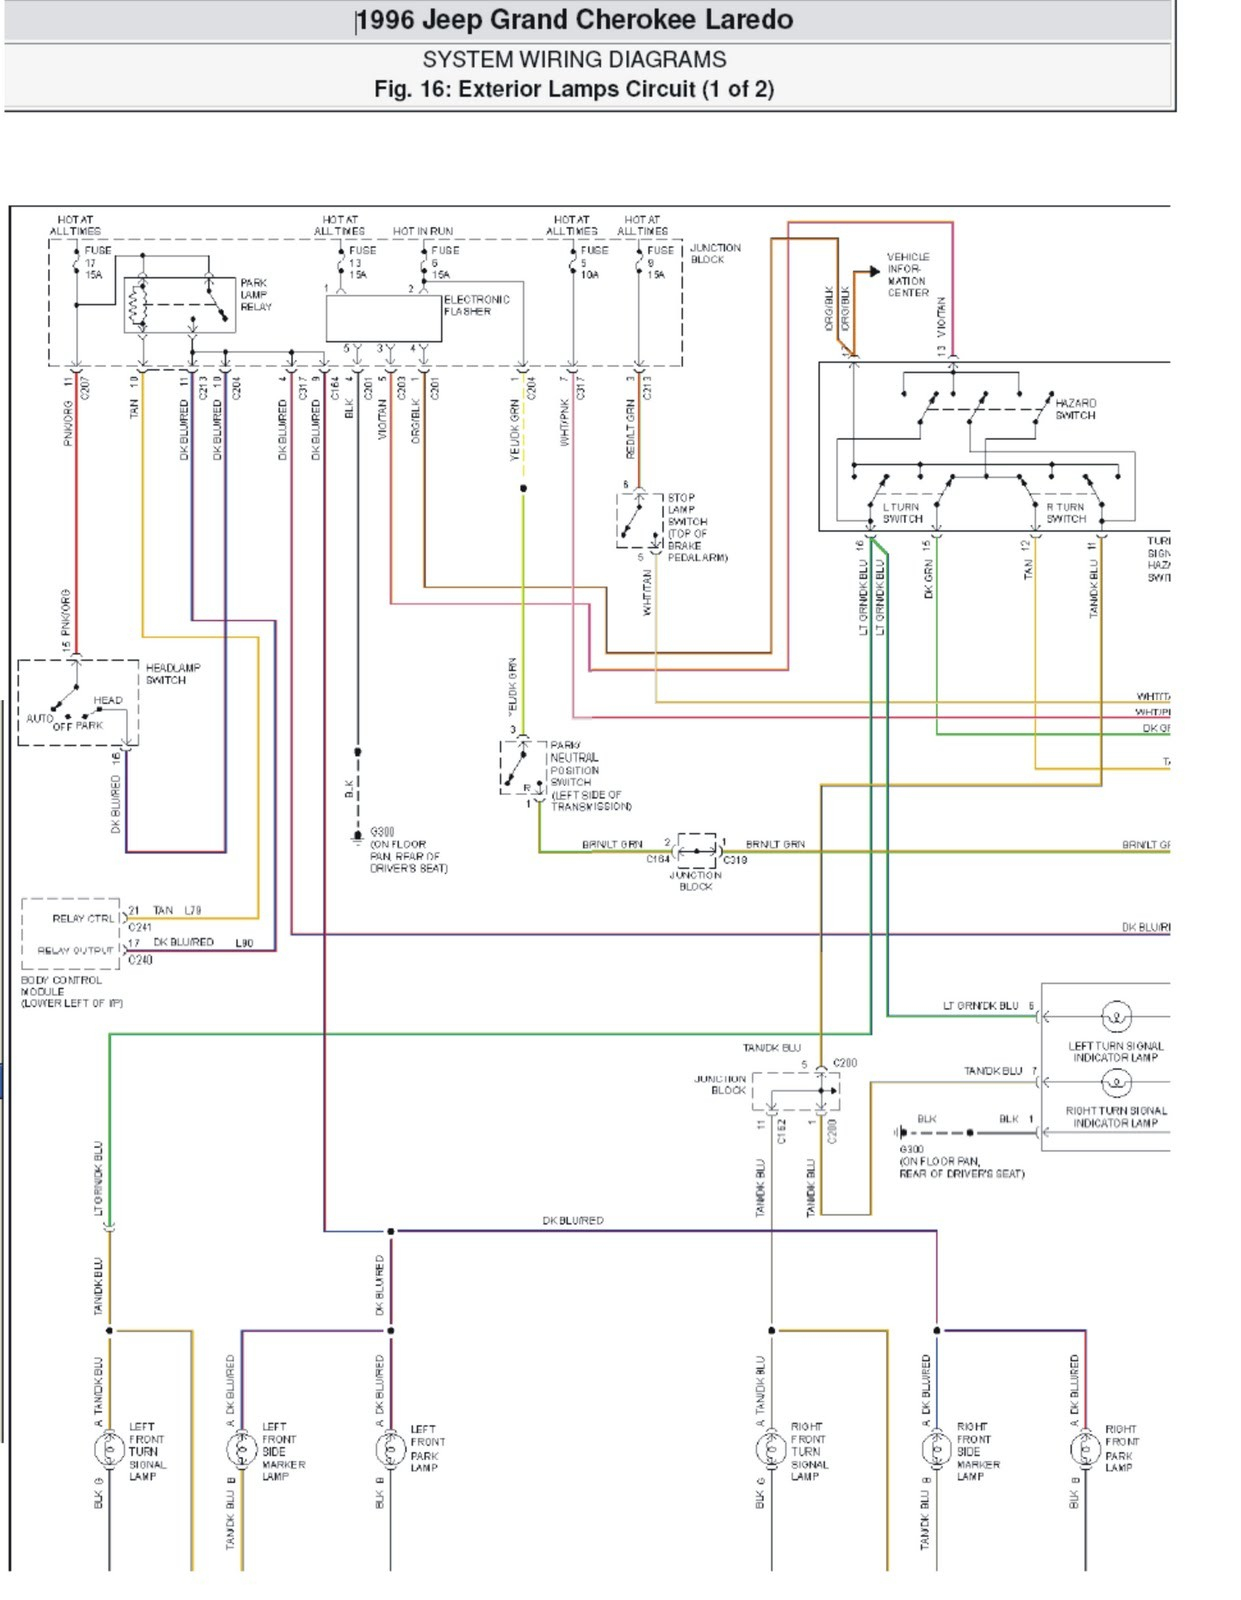 Metra Gmos Wiring Diagram - All Wiring Diagram - Metra 70-5520 Wiring Diagram